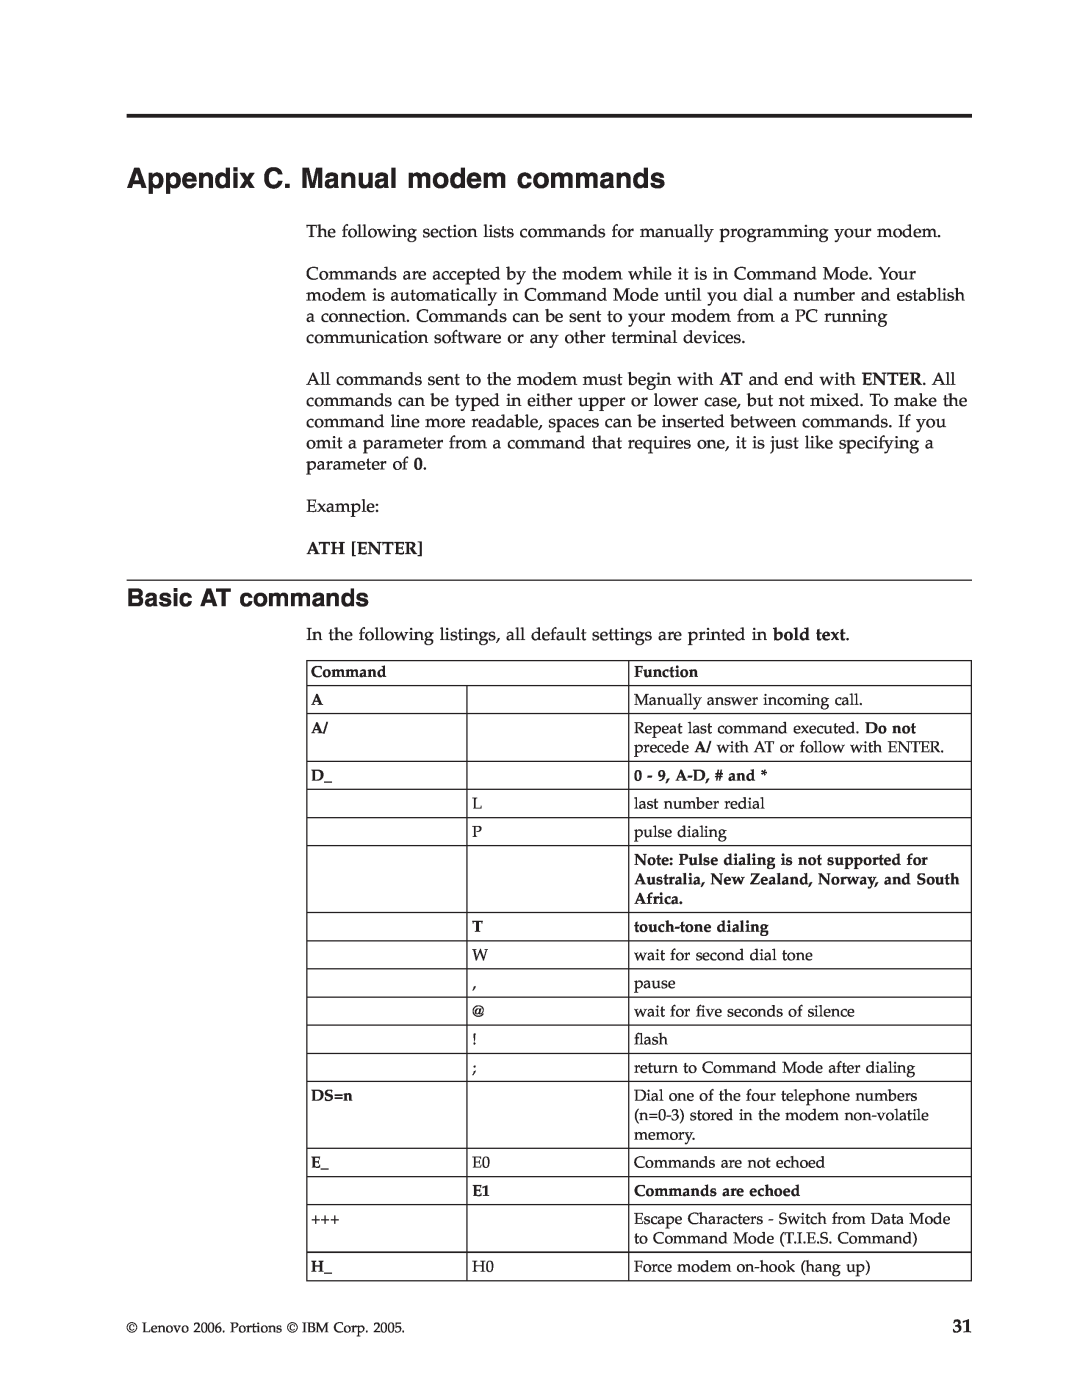 Lenovo 8456, 8455, 8453, 8454, 8459, 8460, 8457, 8458 manual Appendix C. Manual modem commands, Basic AT commands 